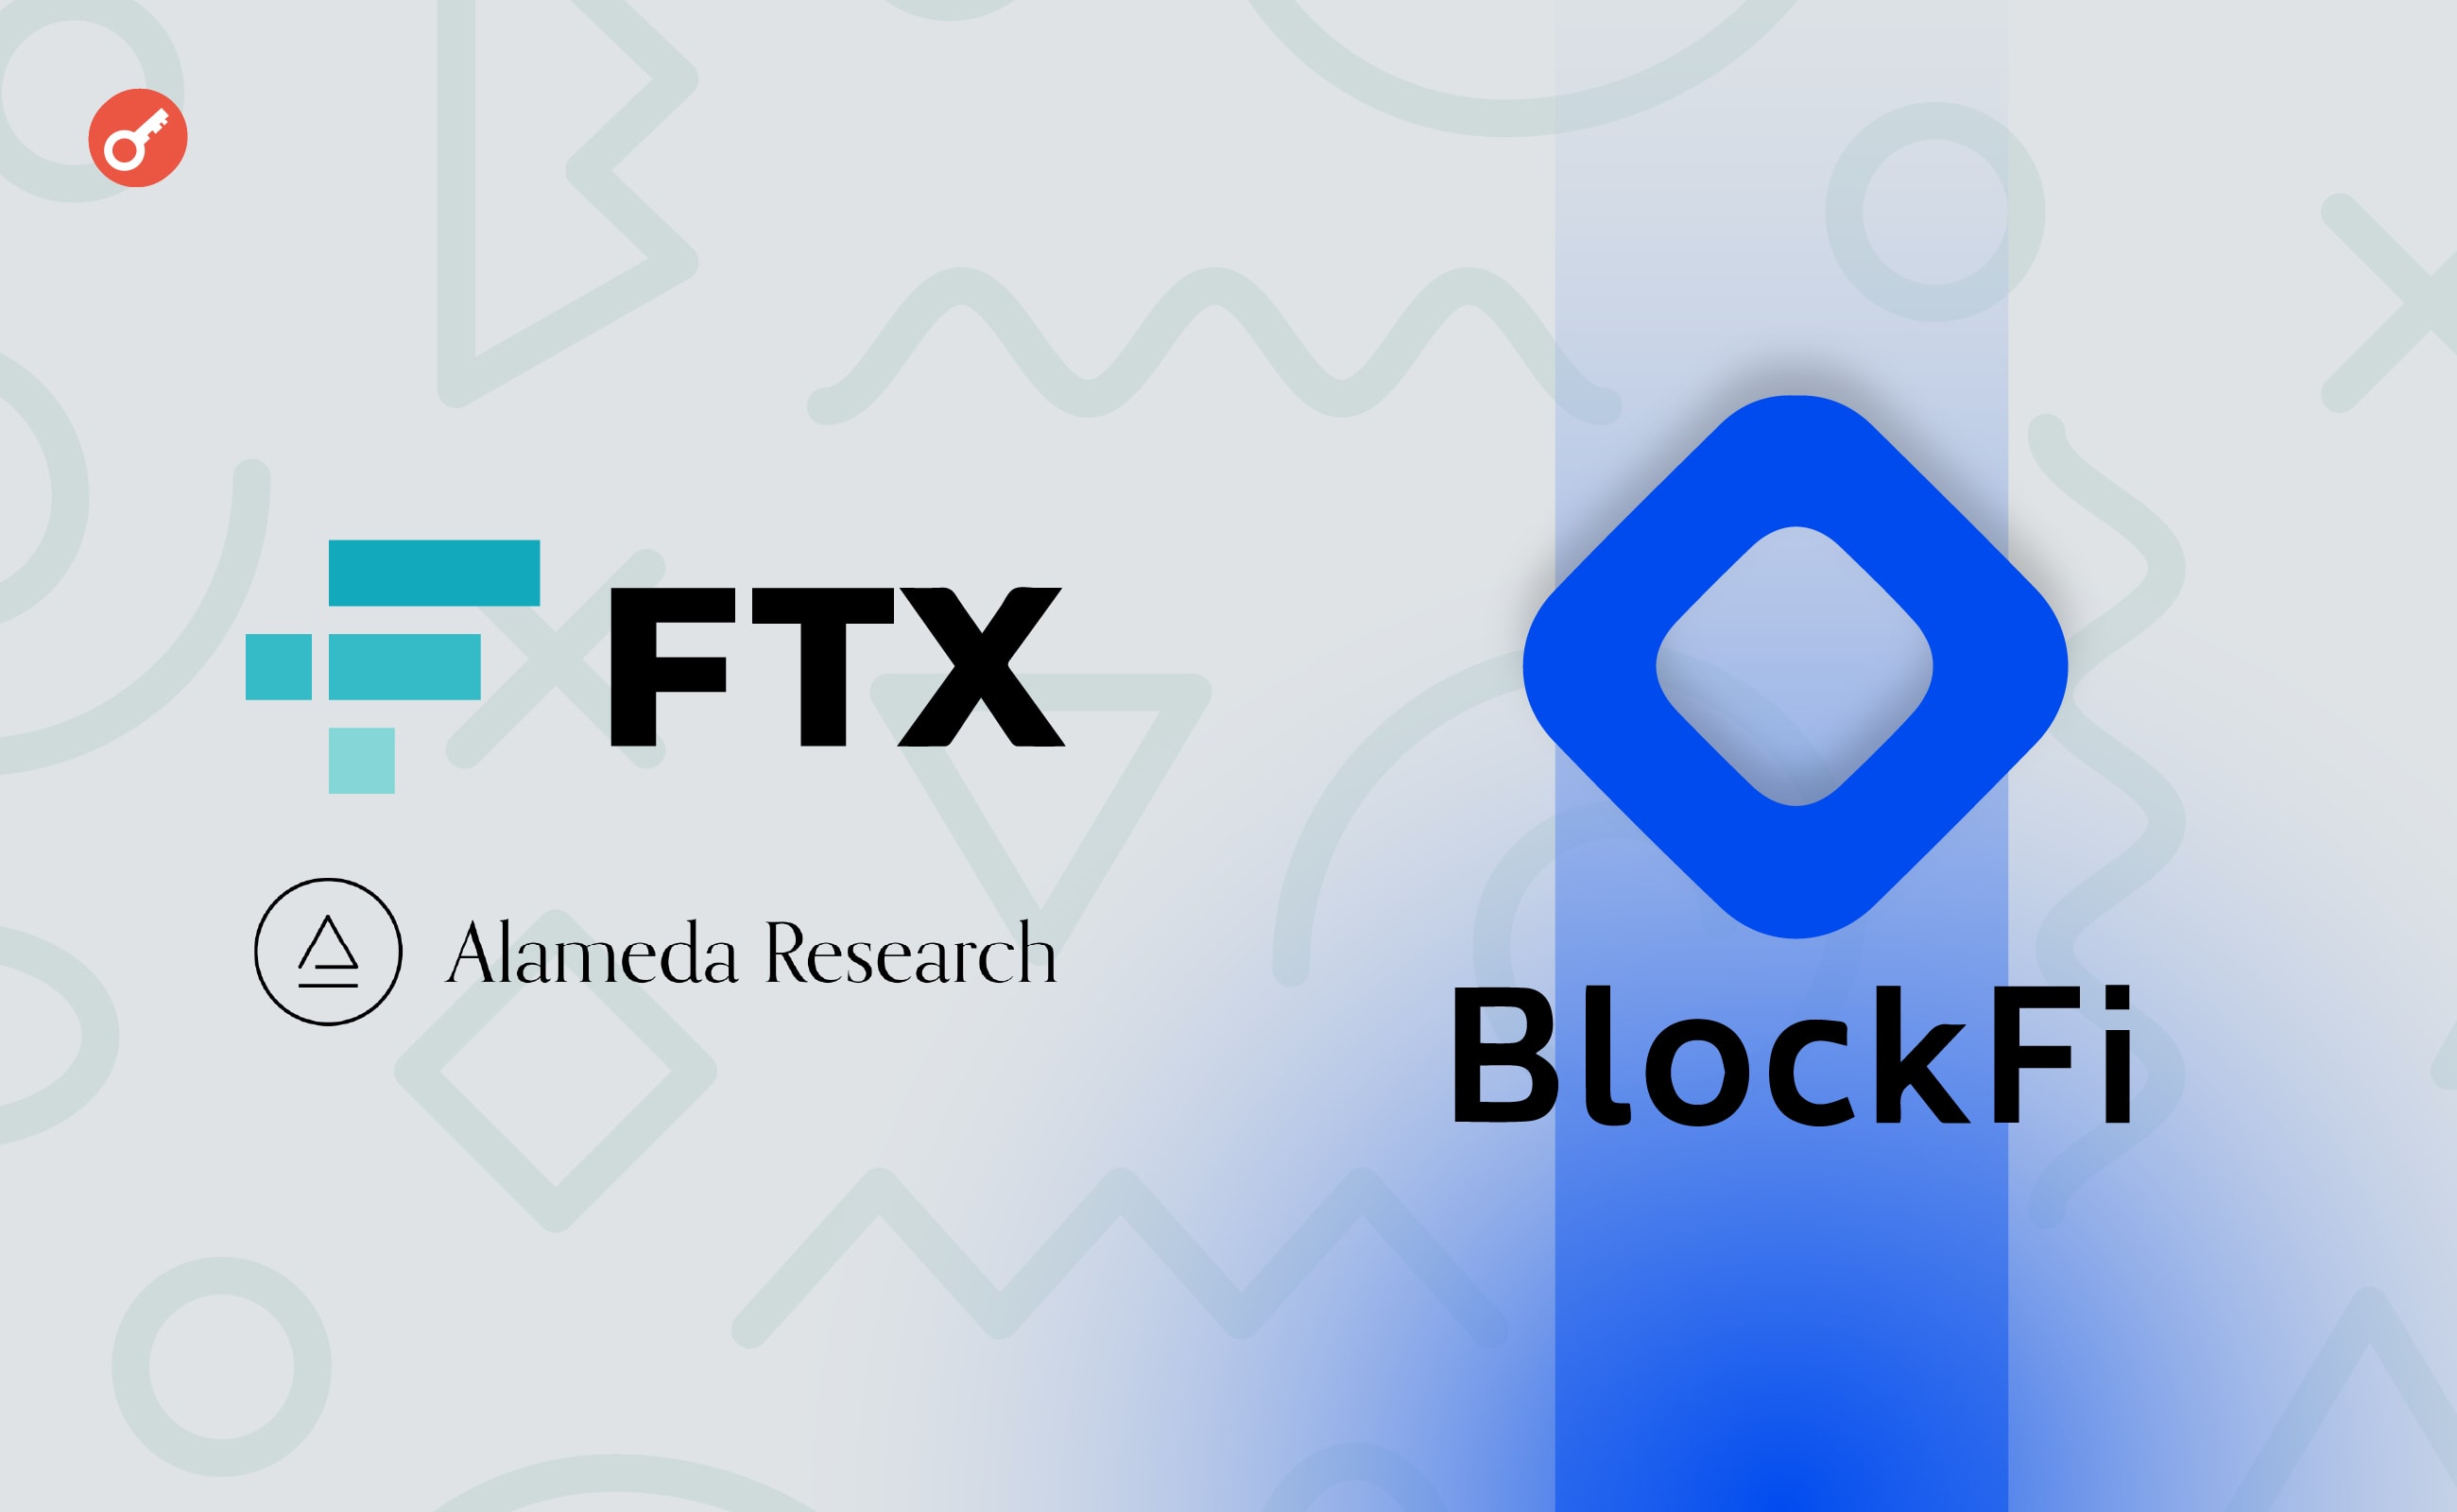 FTX и Alameda Research выплатят BlockFi $874,5 млн в рамках урегулирования спора. Заглавный коллаж новости.